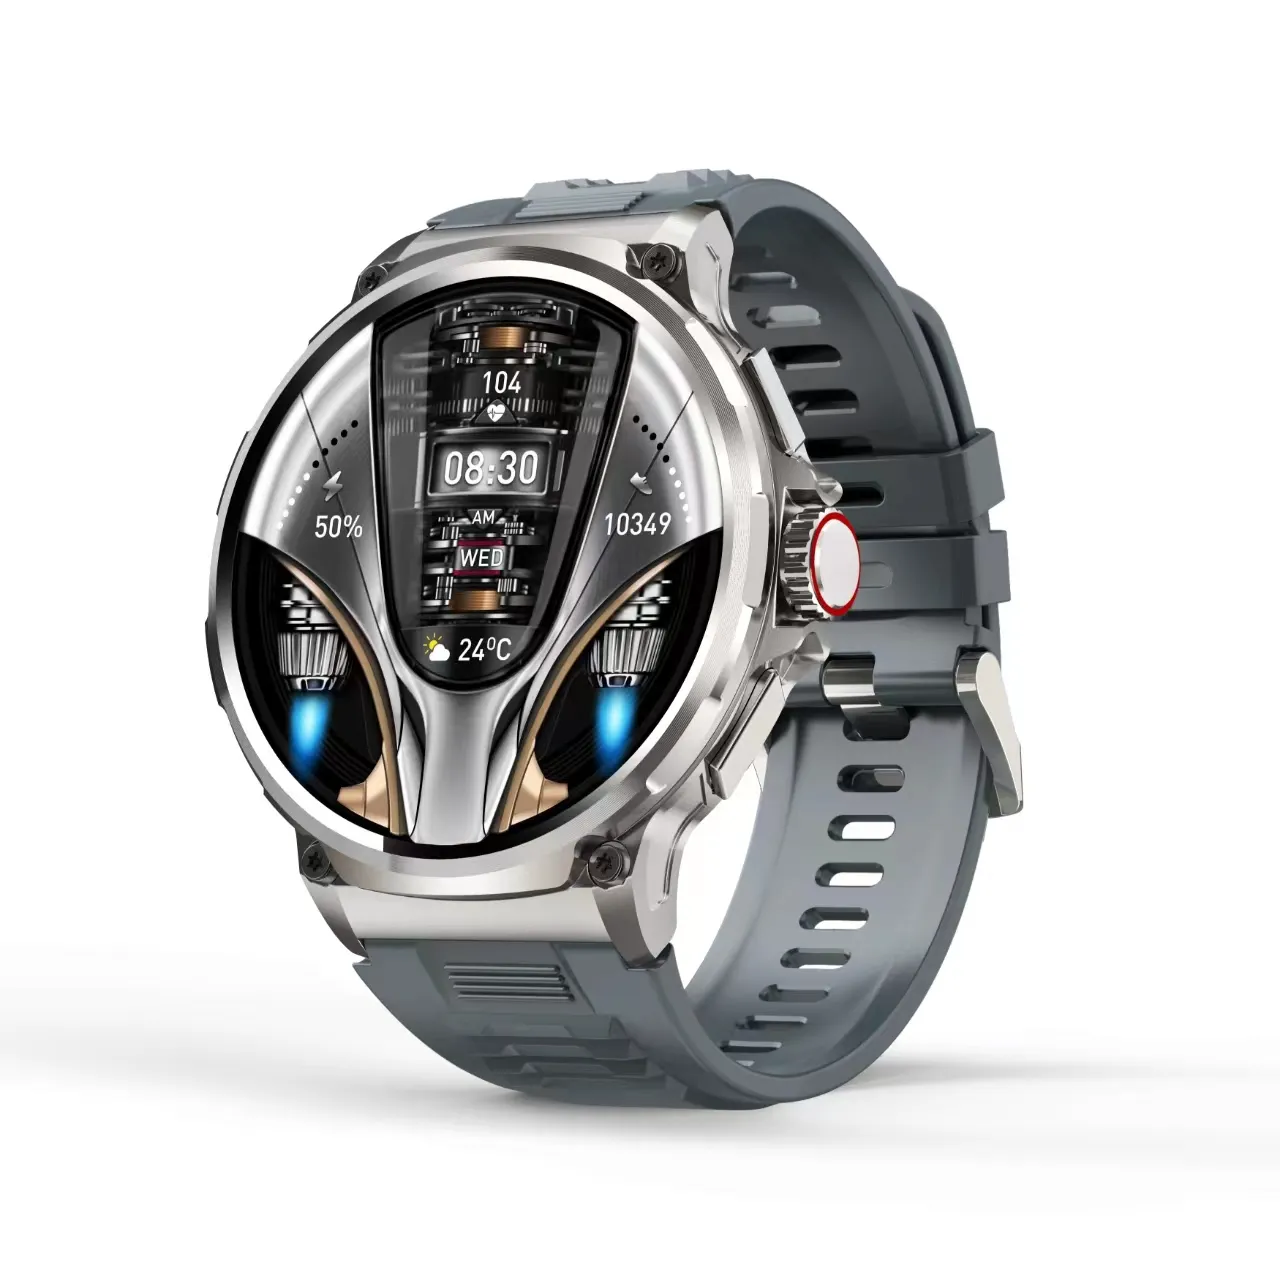 V69 smartwatch watch call 1,85 zoll HD-display immer auf dem bildschirm 400+ uhrenfassaden 710 mAh großer akku wasserdicht reloj smartwatch